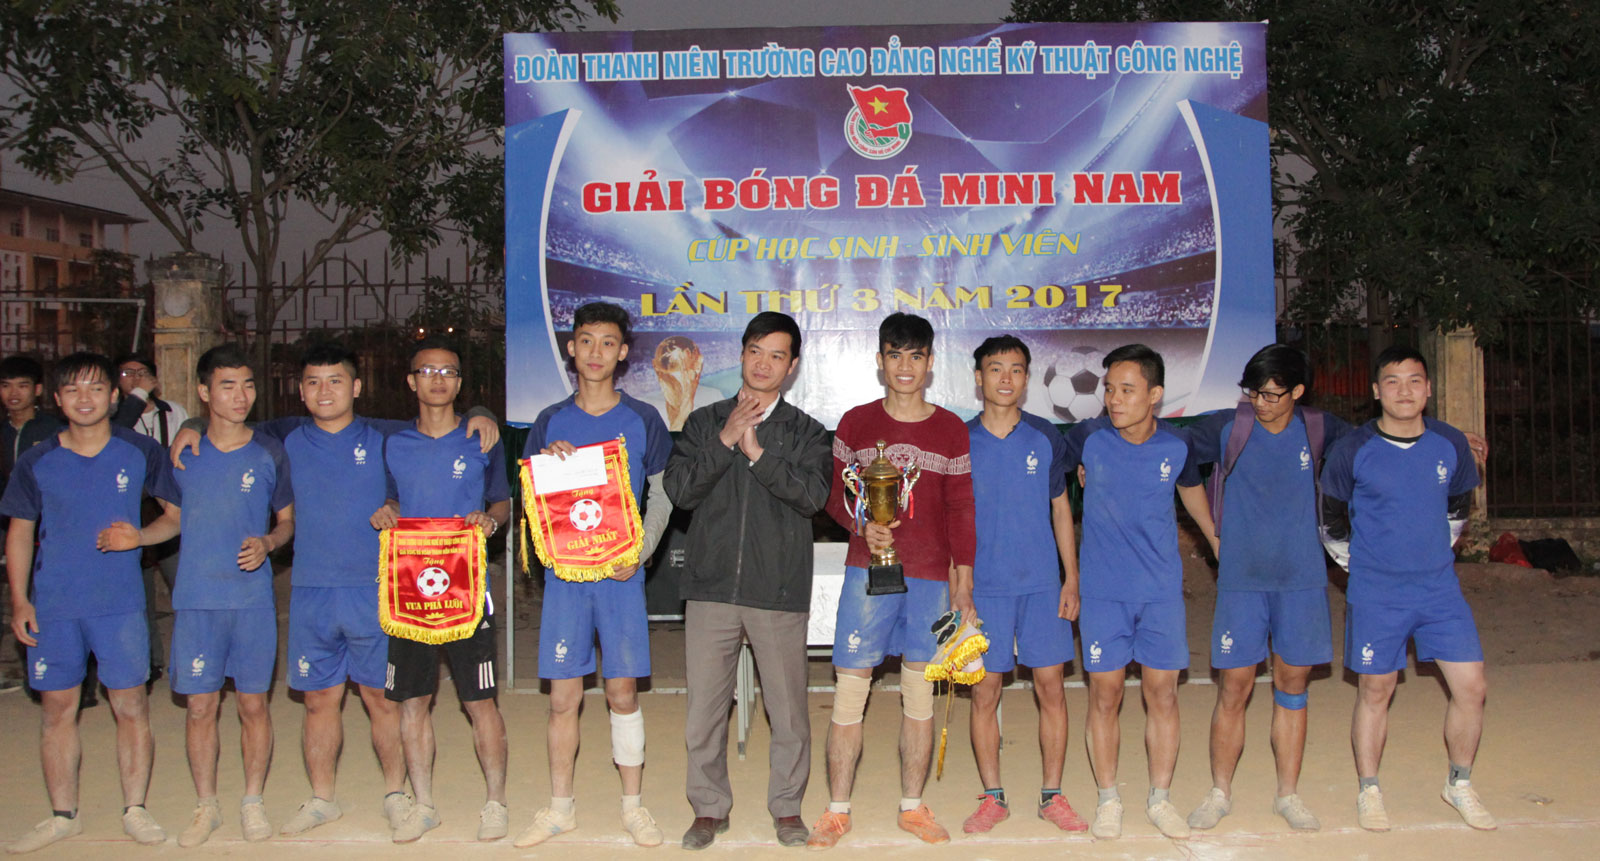 Giải bóng đá mini nam HSSV lần thứ 3 năm 2017